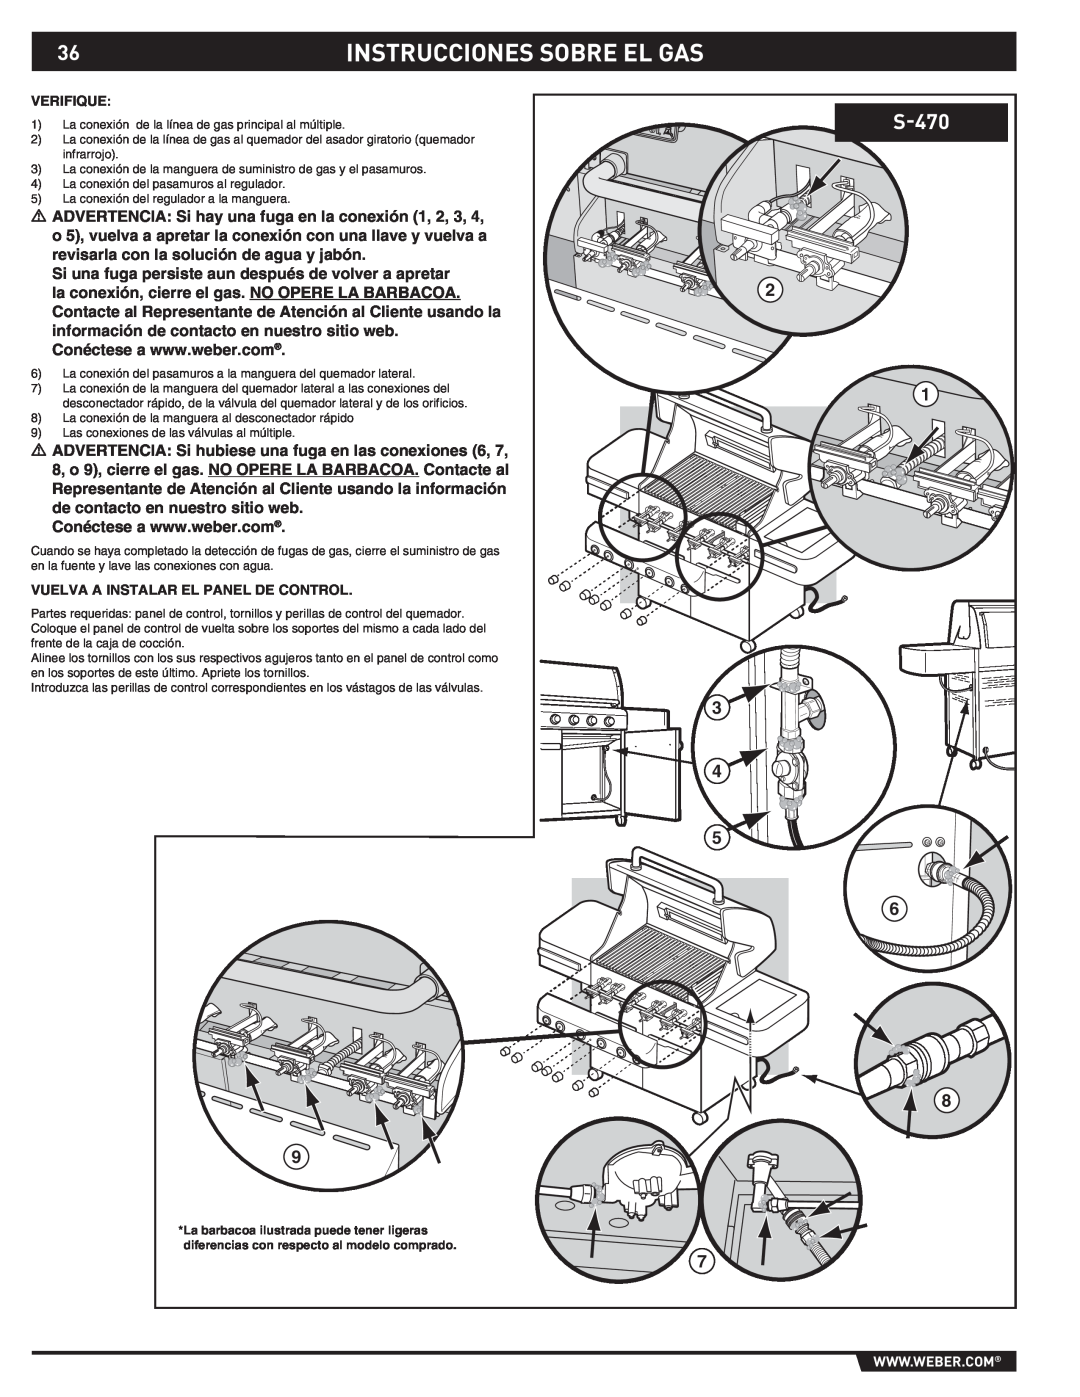 Weber S-470TM manual Instrucciones Sobre El Gas, Verifique, Vuelva A Instalar El Panel De Control 